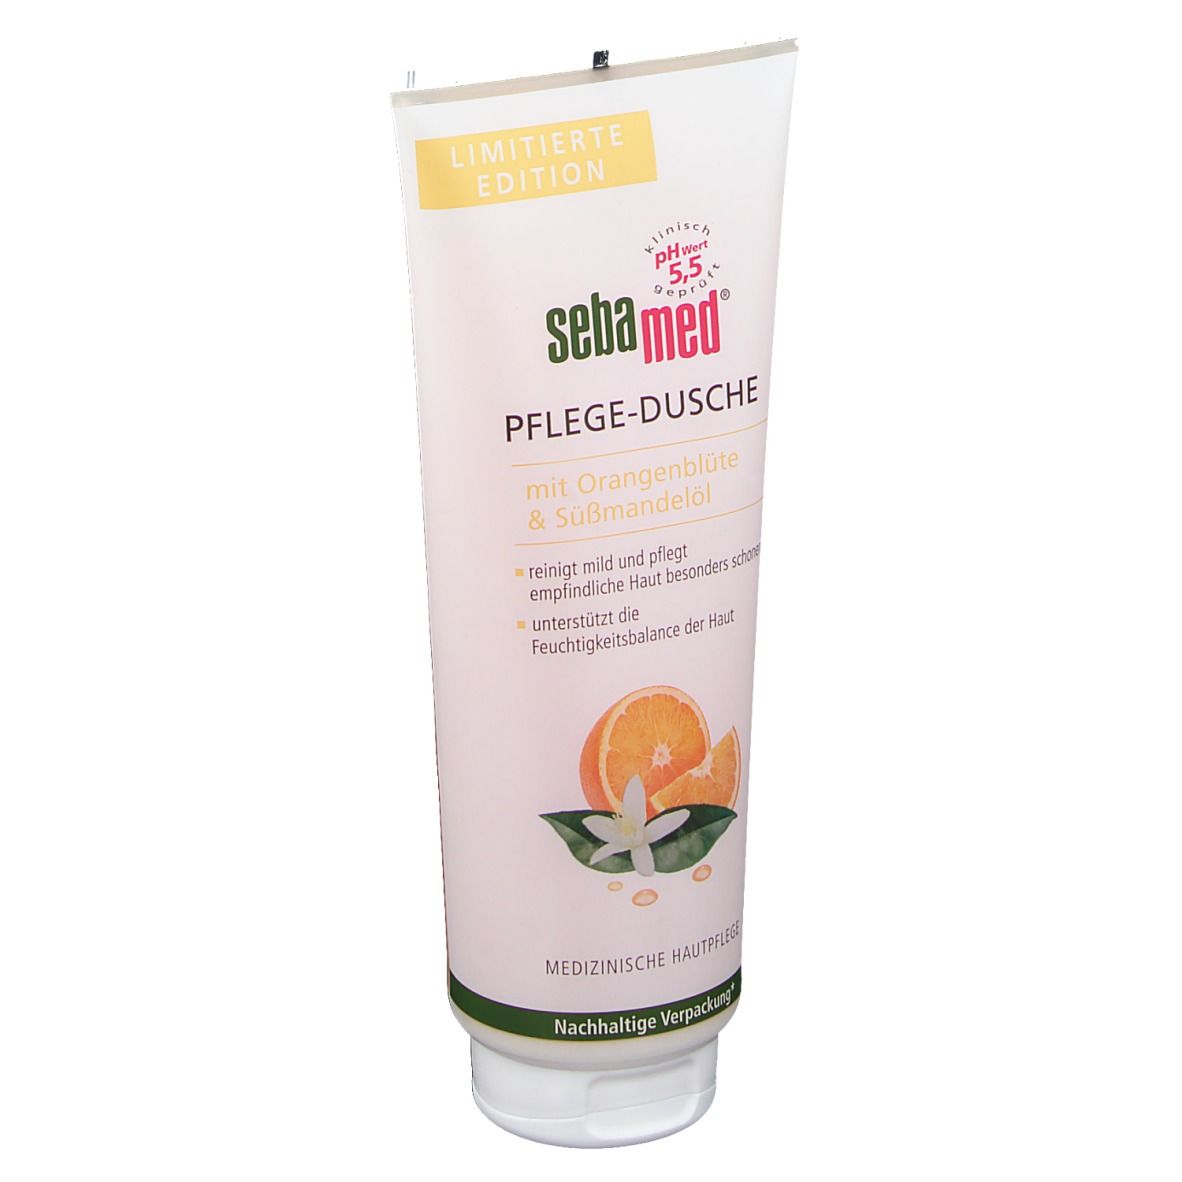 sebamed® Pflege-Dusche mit Orangenblüte & Süßmandelöl